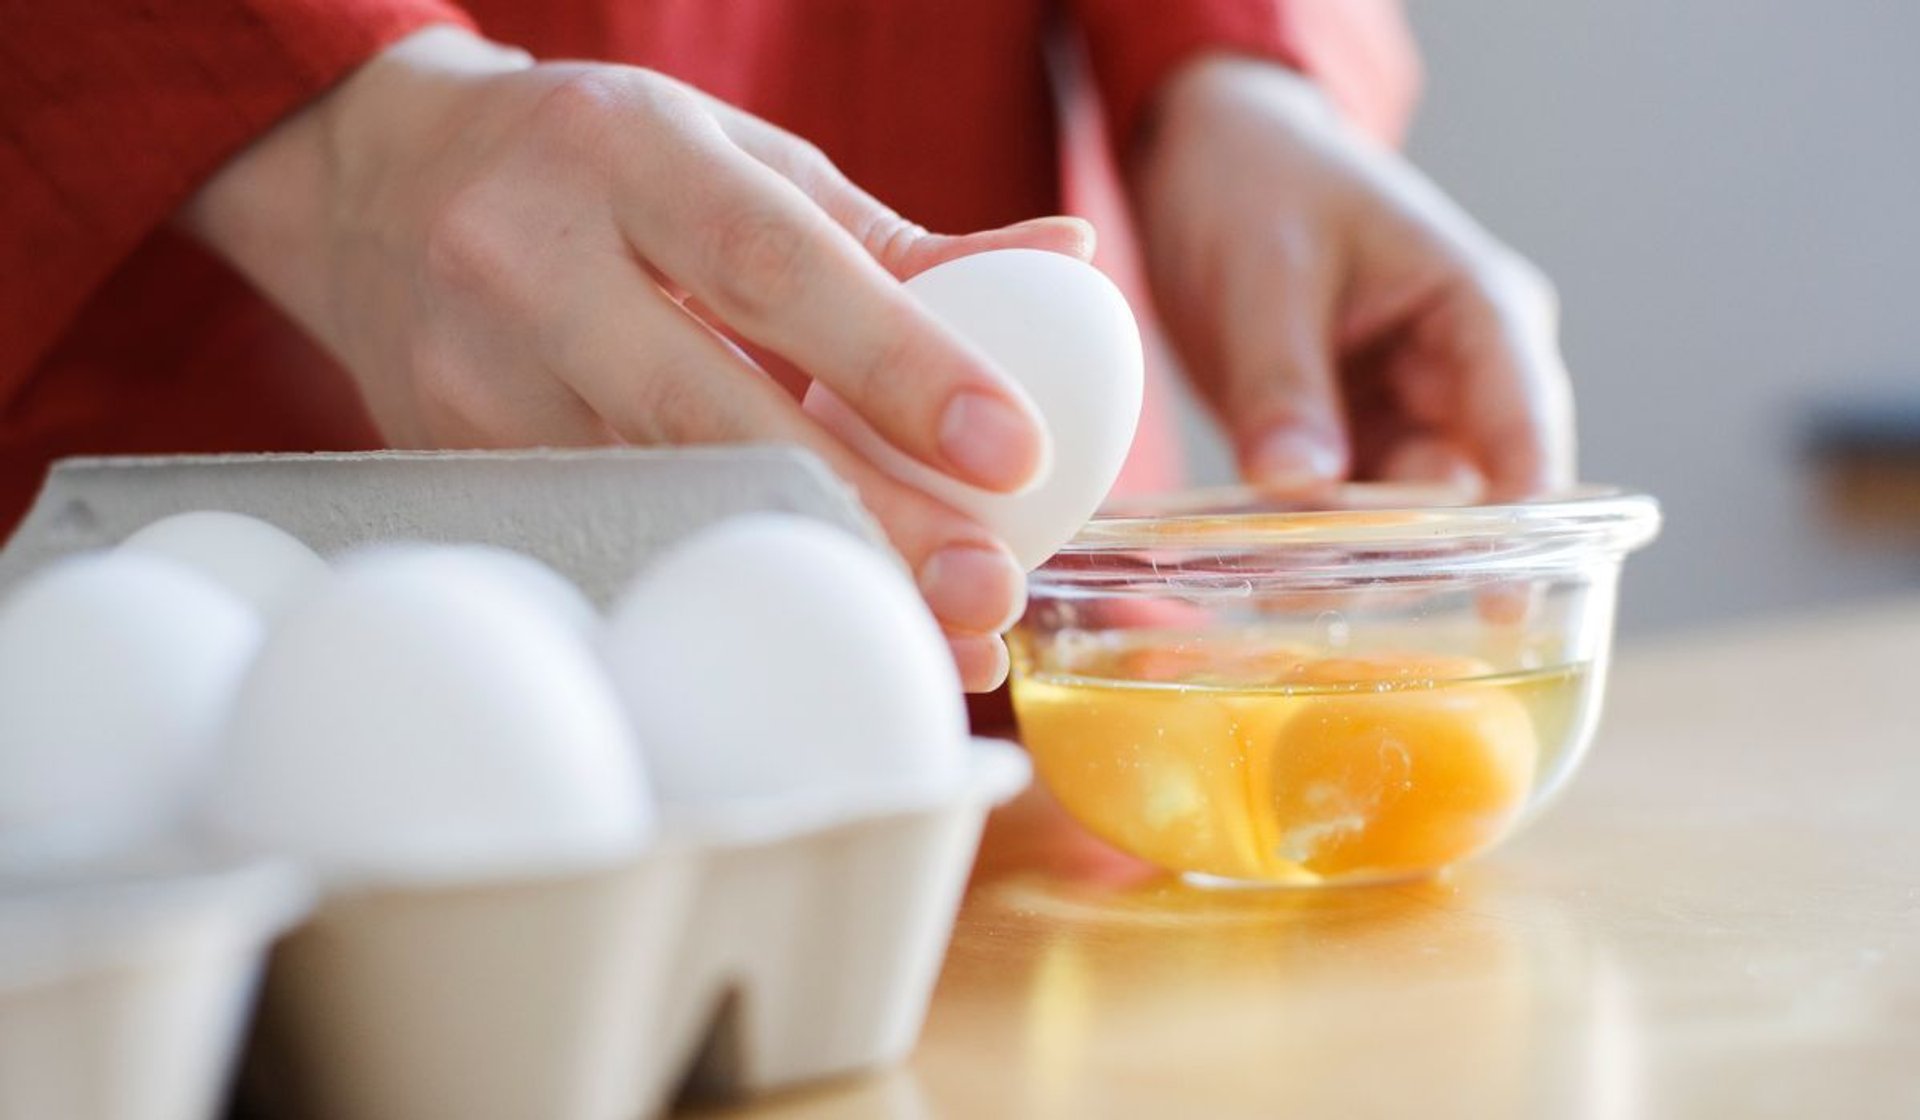 Zapomnij o oleju i maśle. 100 razy lepszą jajecznicę usmażysz bez grama tłuszczu 